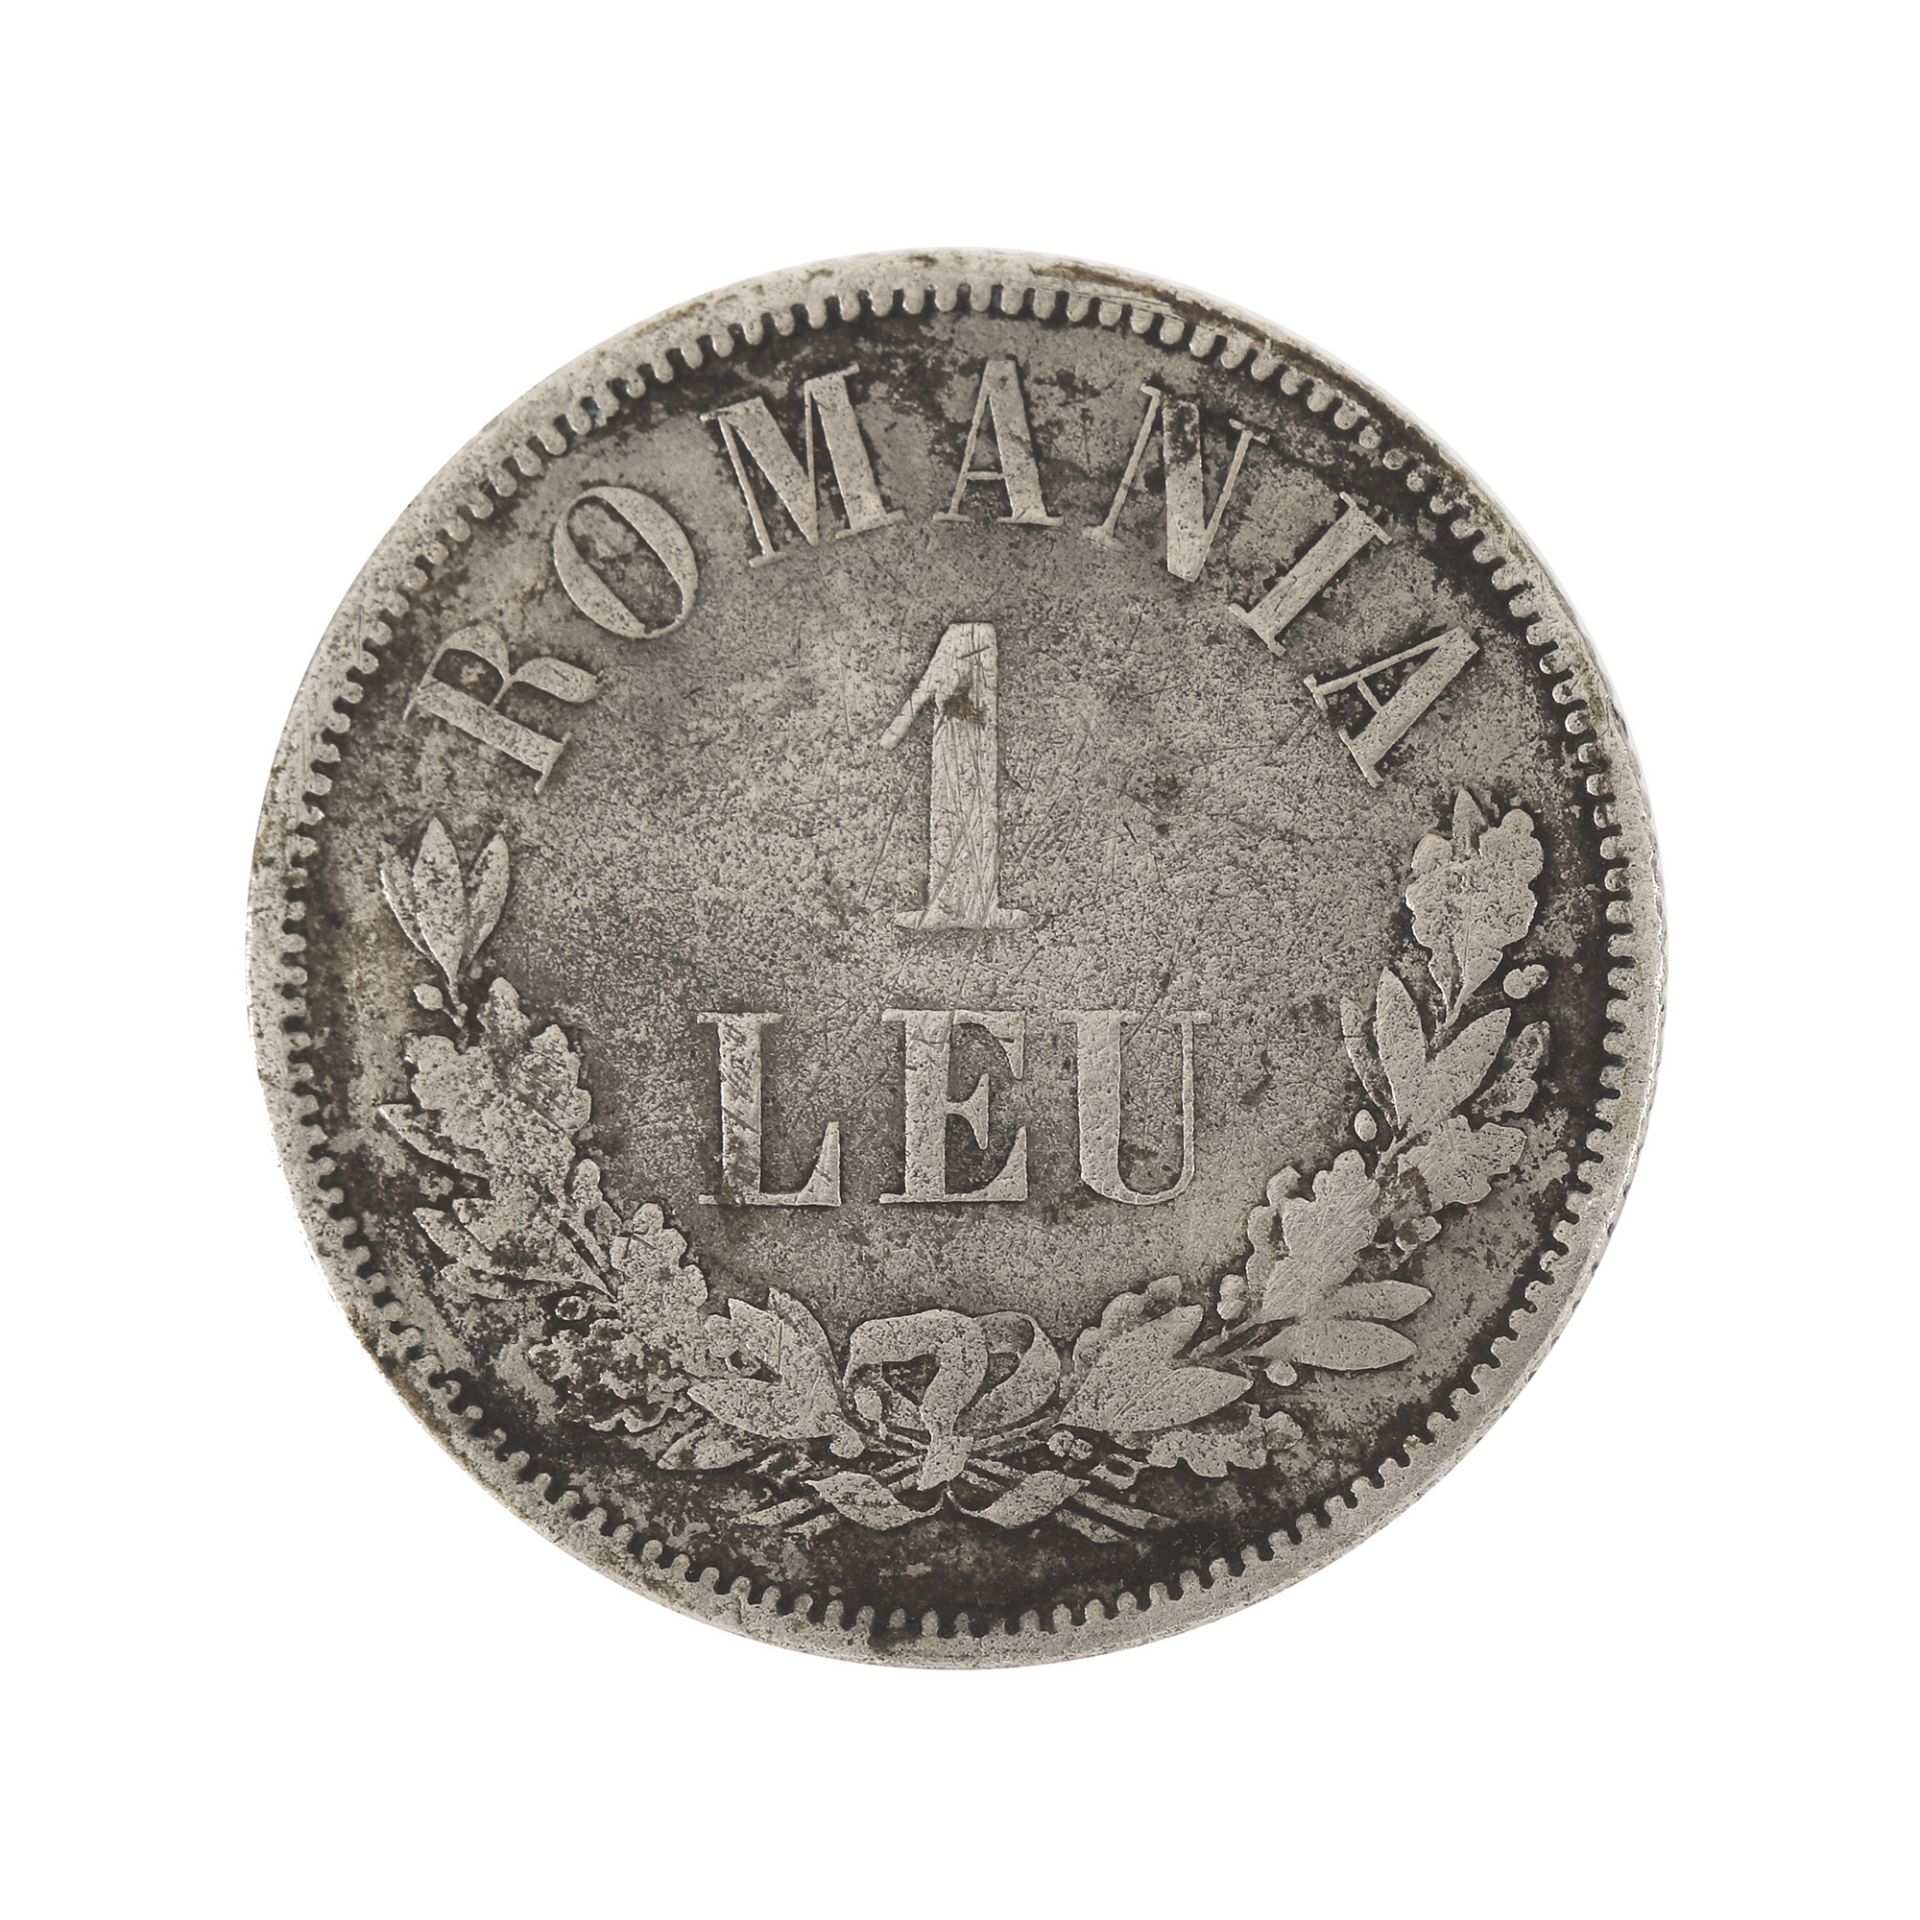 1 Leu 1876 coin, silver - Image 2 of 2